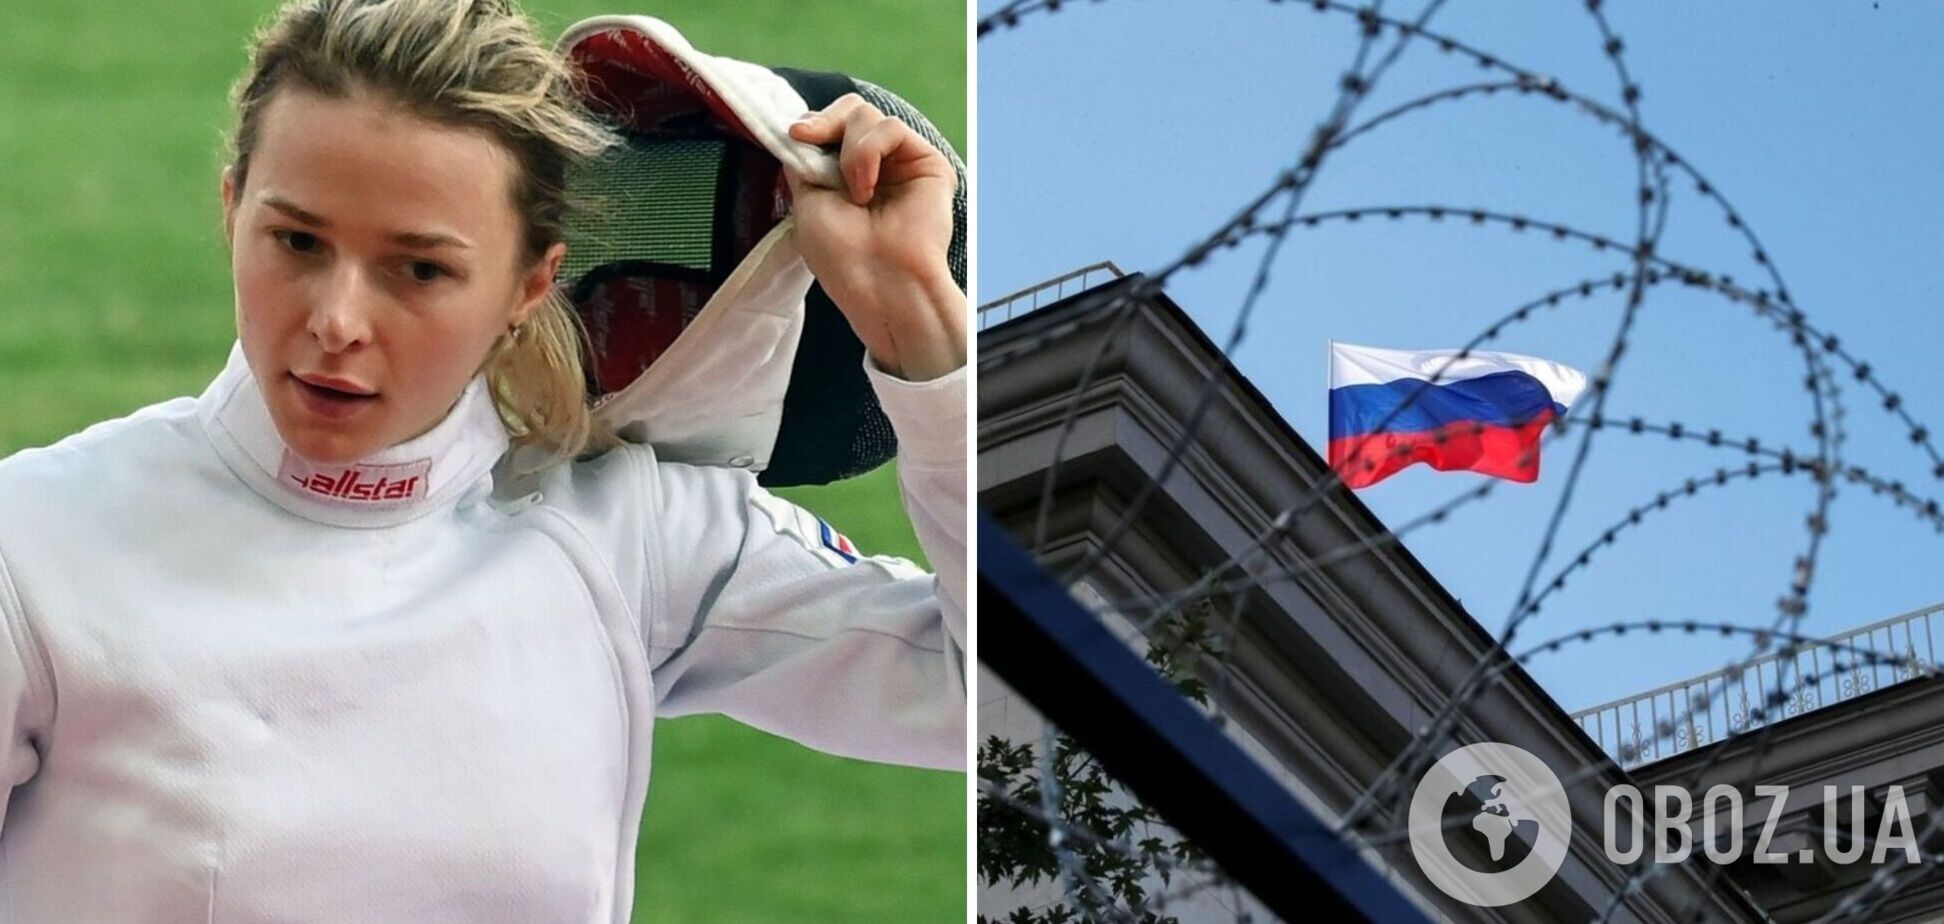 6-кратную чемпионку России выгнали из сборной из-за получения 'нейтрального статуса'